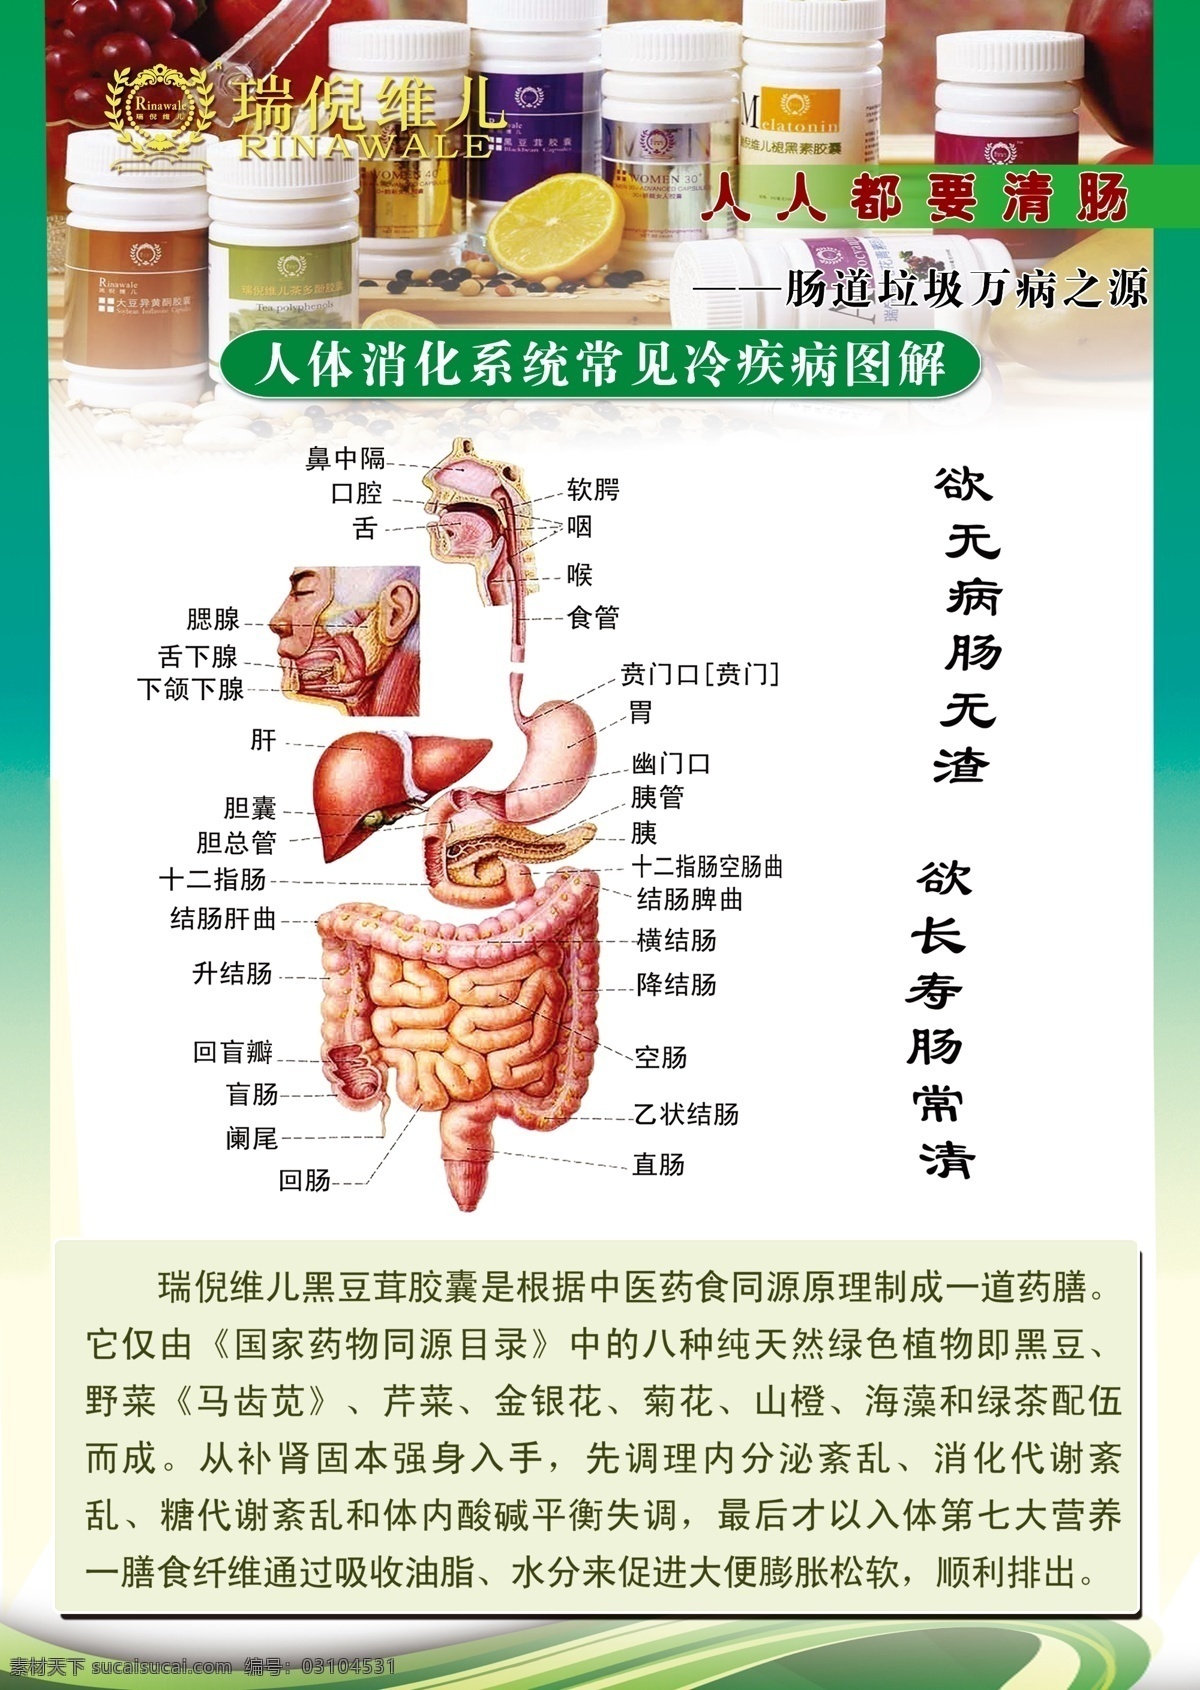 消化系统图 人体内脏图 身体器官图 肠道 胃